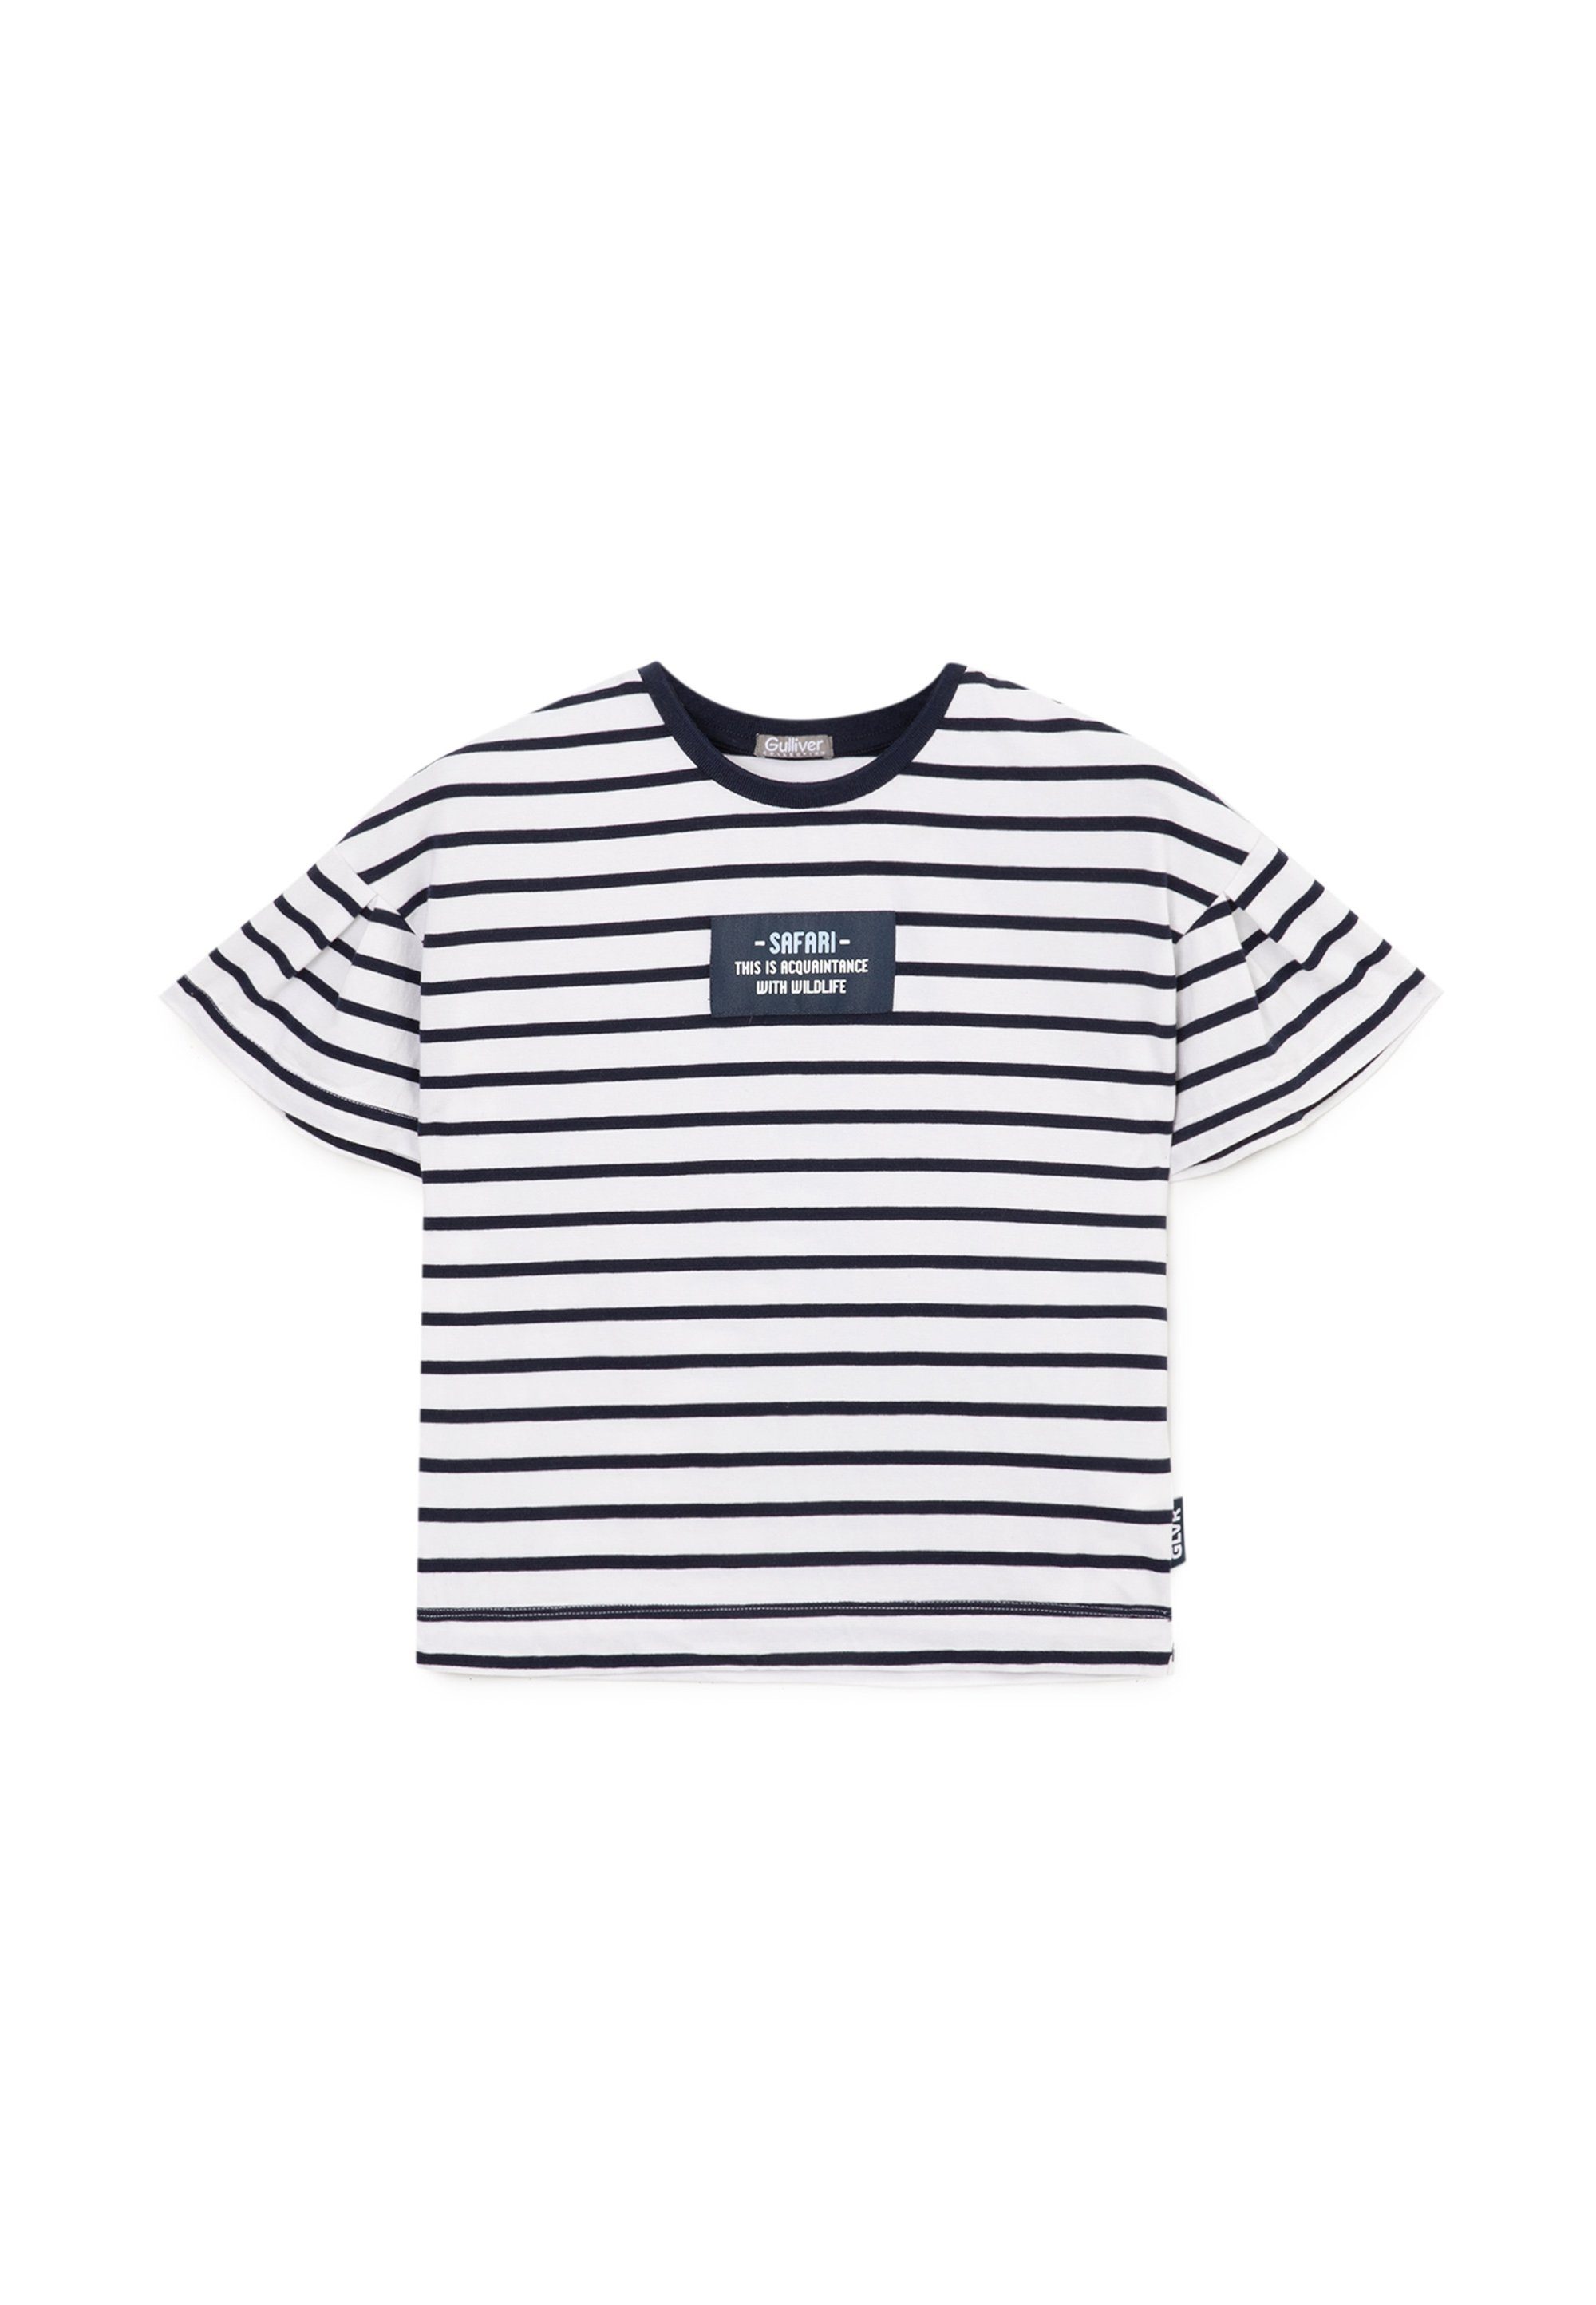 T-Shirt Streifen-Design im Gulliver tollen